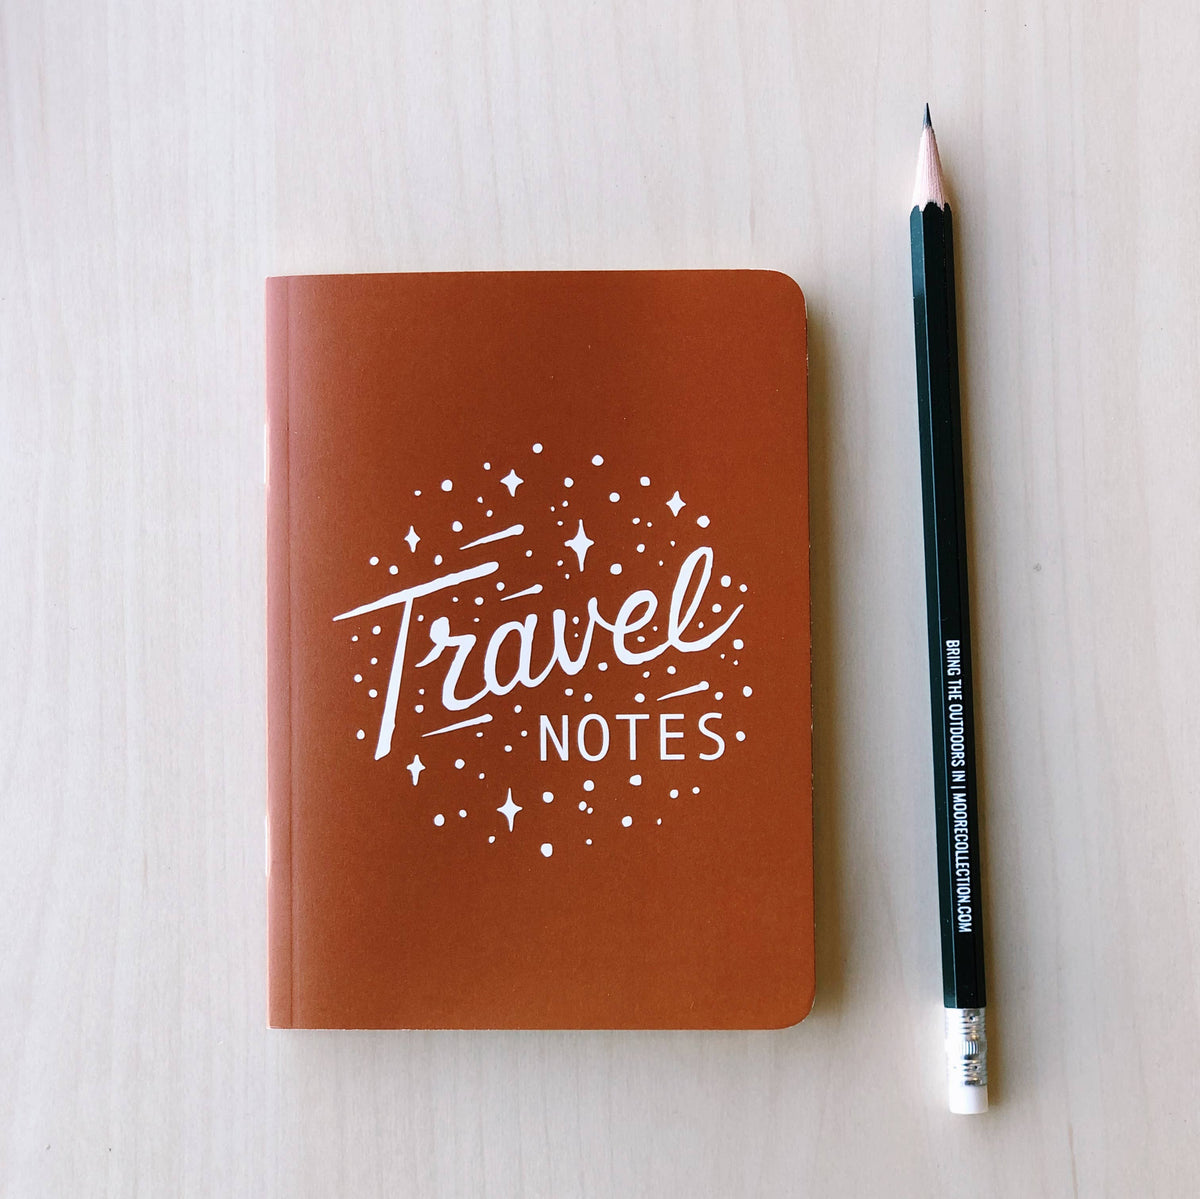 Mini Travel Notes